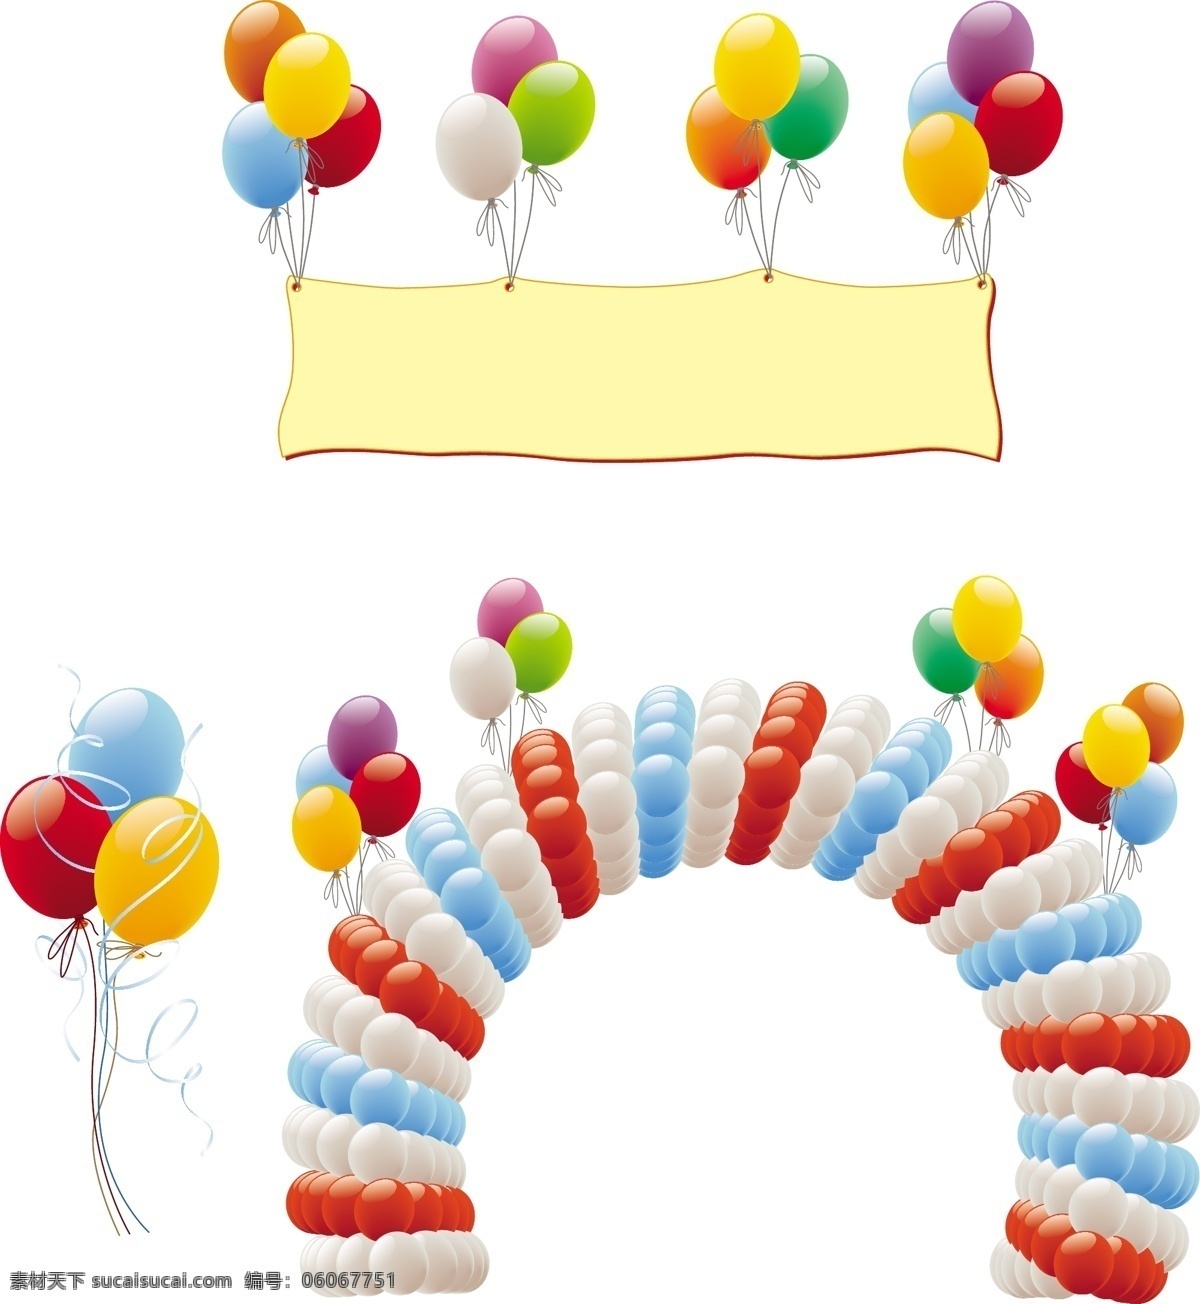 生日气球 彩色气球 拱门气球 生日设备 生日装饰 矢量气球 飘落气球 图标标签标志 生活百科